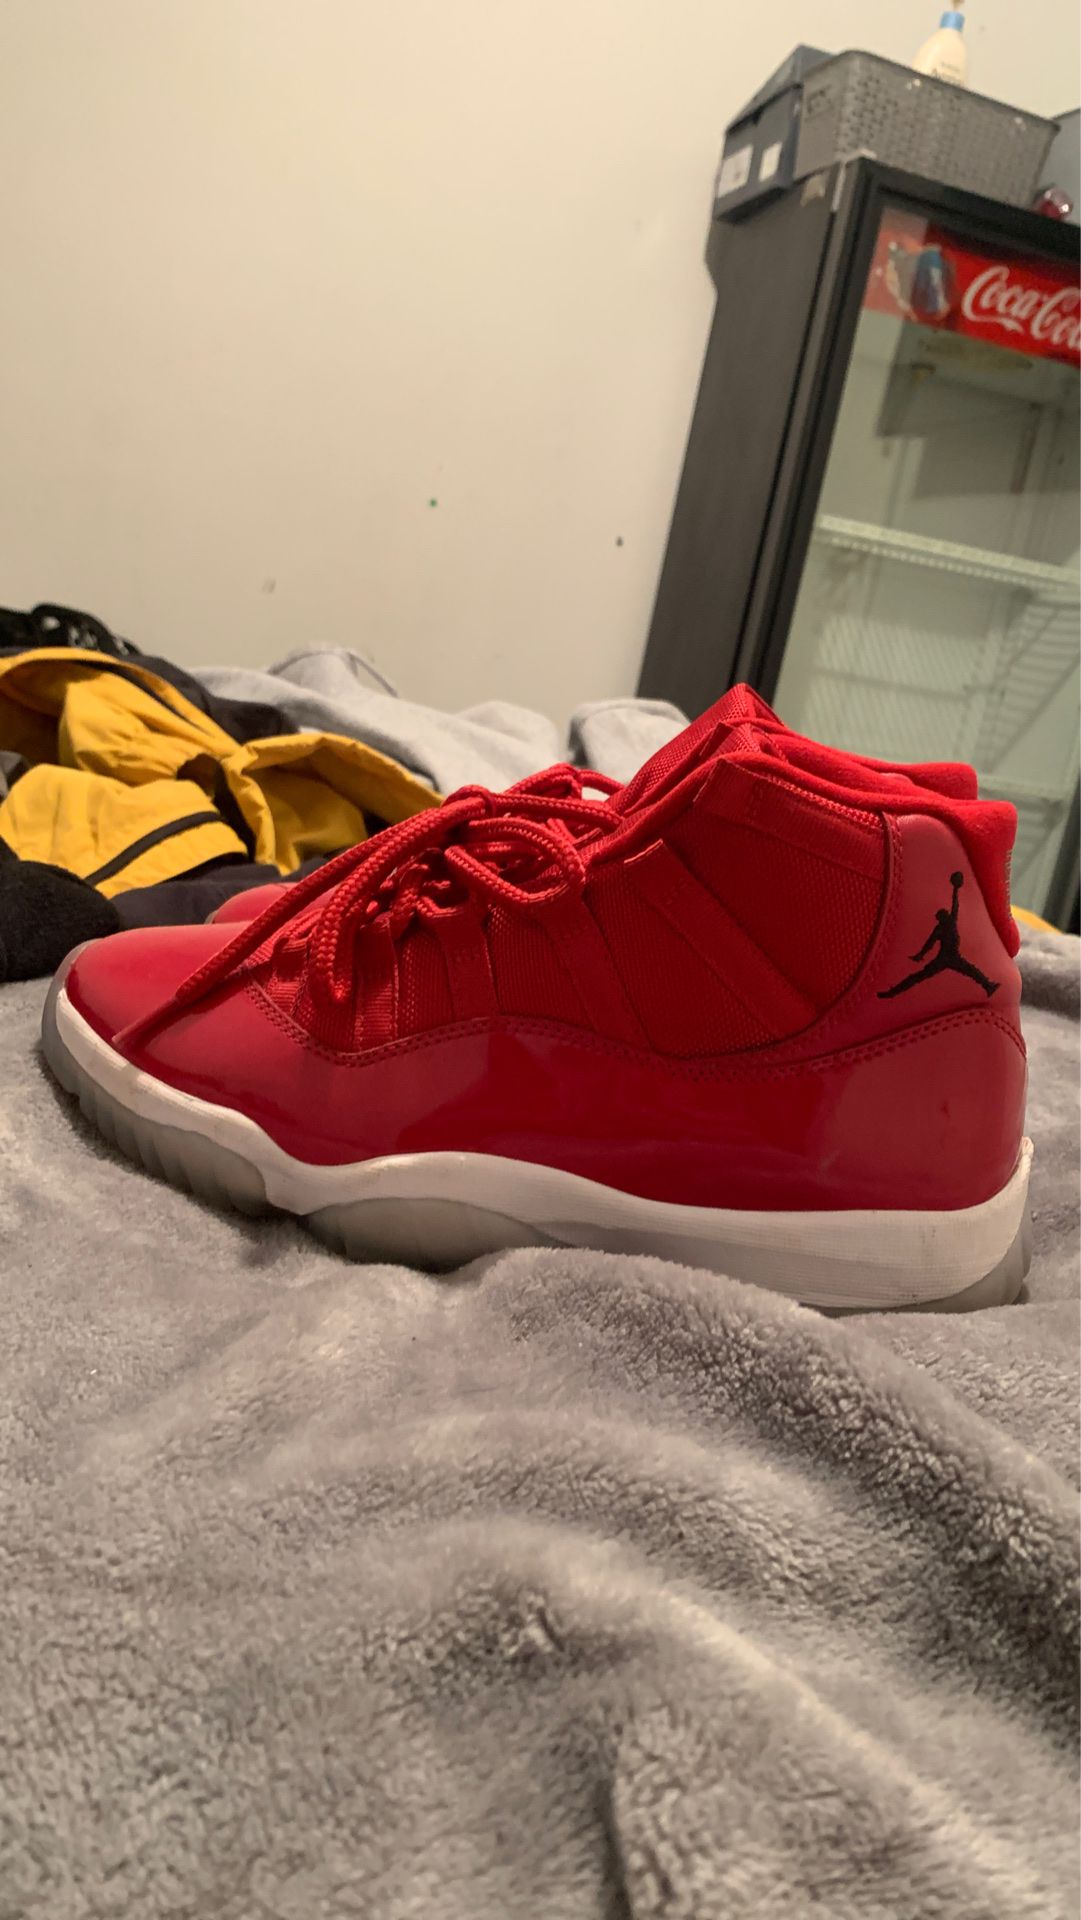 Jordan 11s size 8 $50